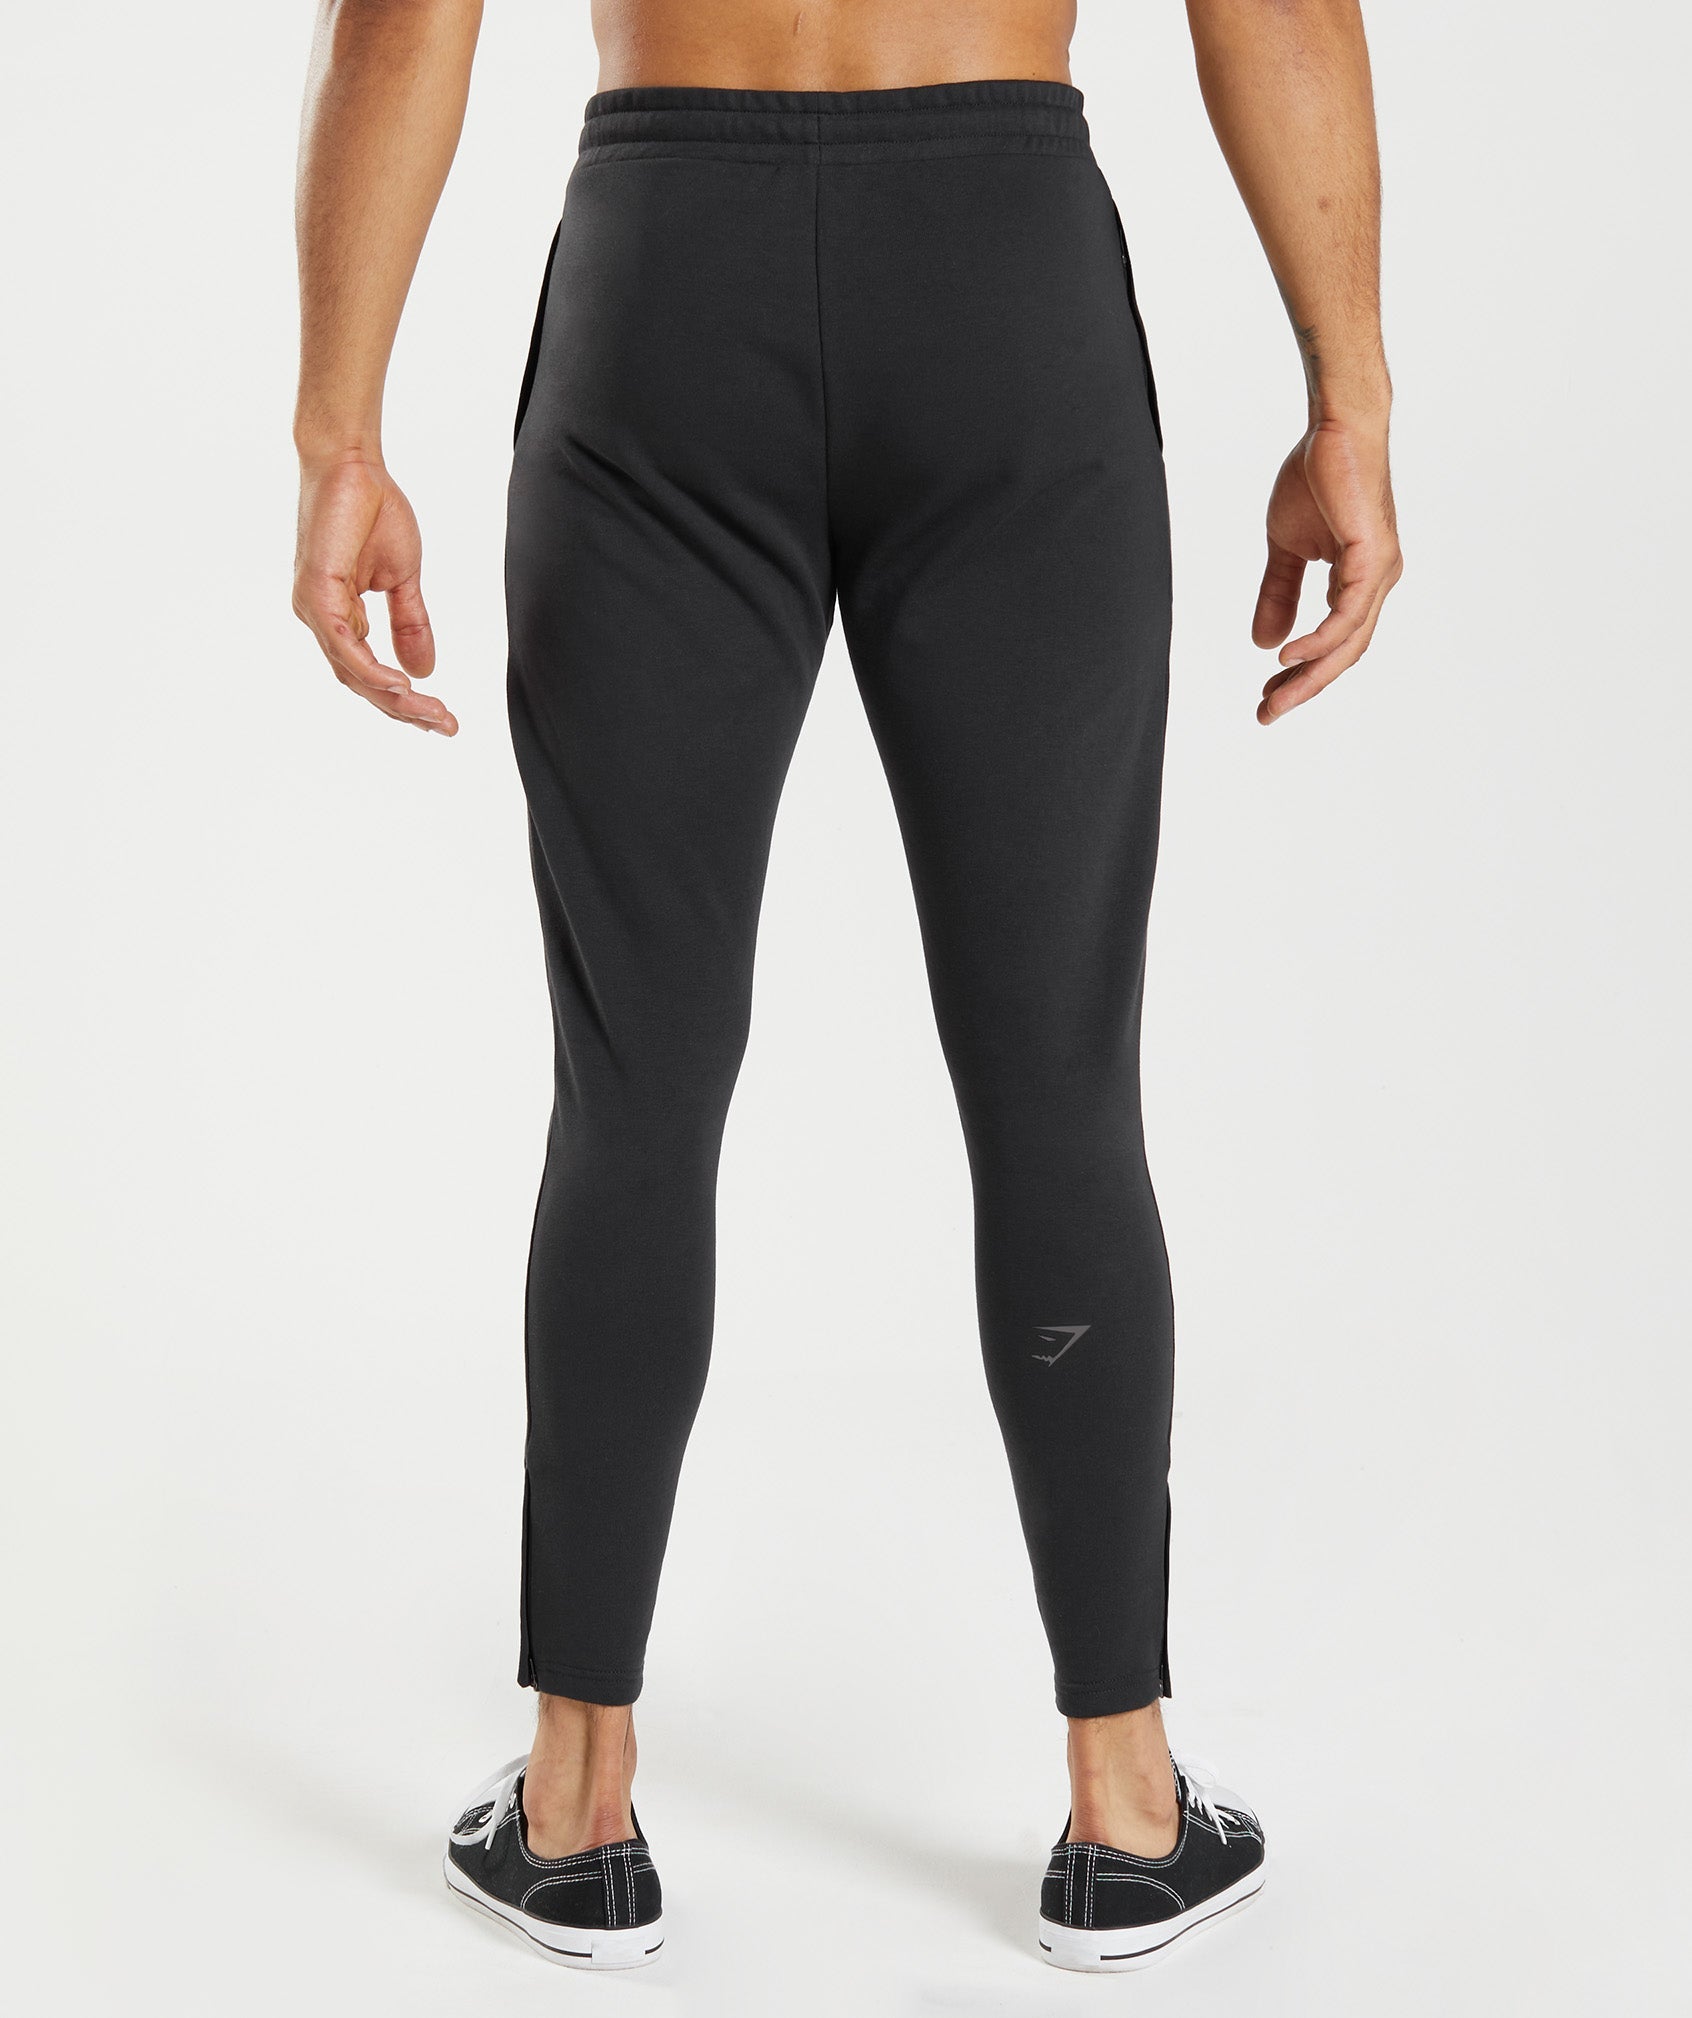 Grey straight leg joggers – Ellsbelles